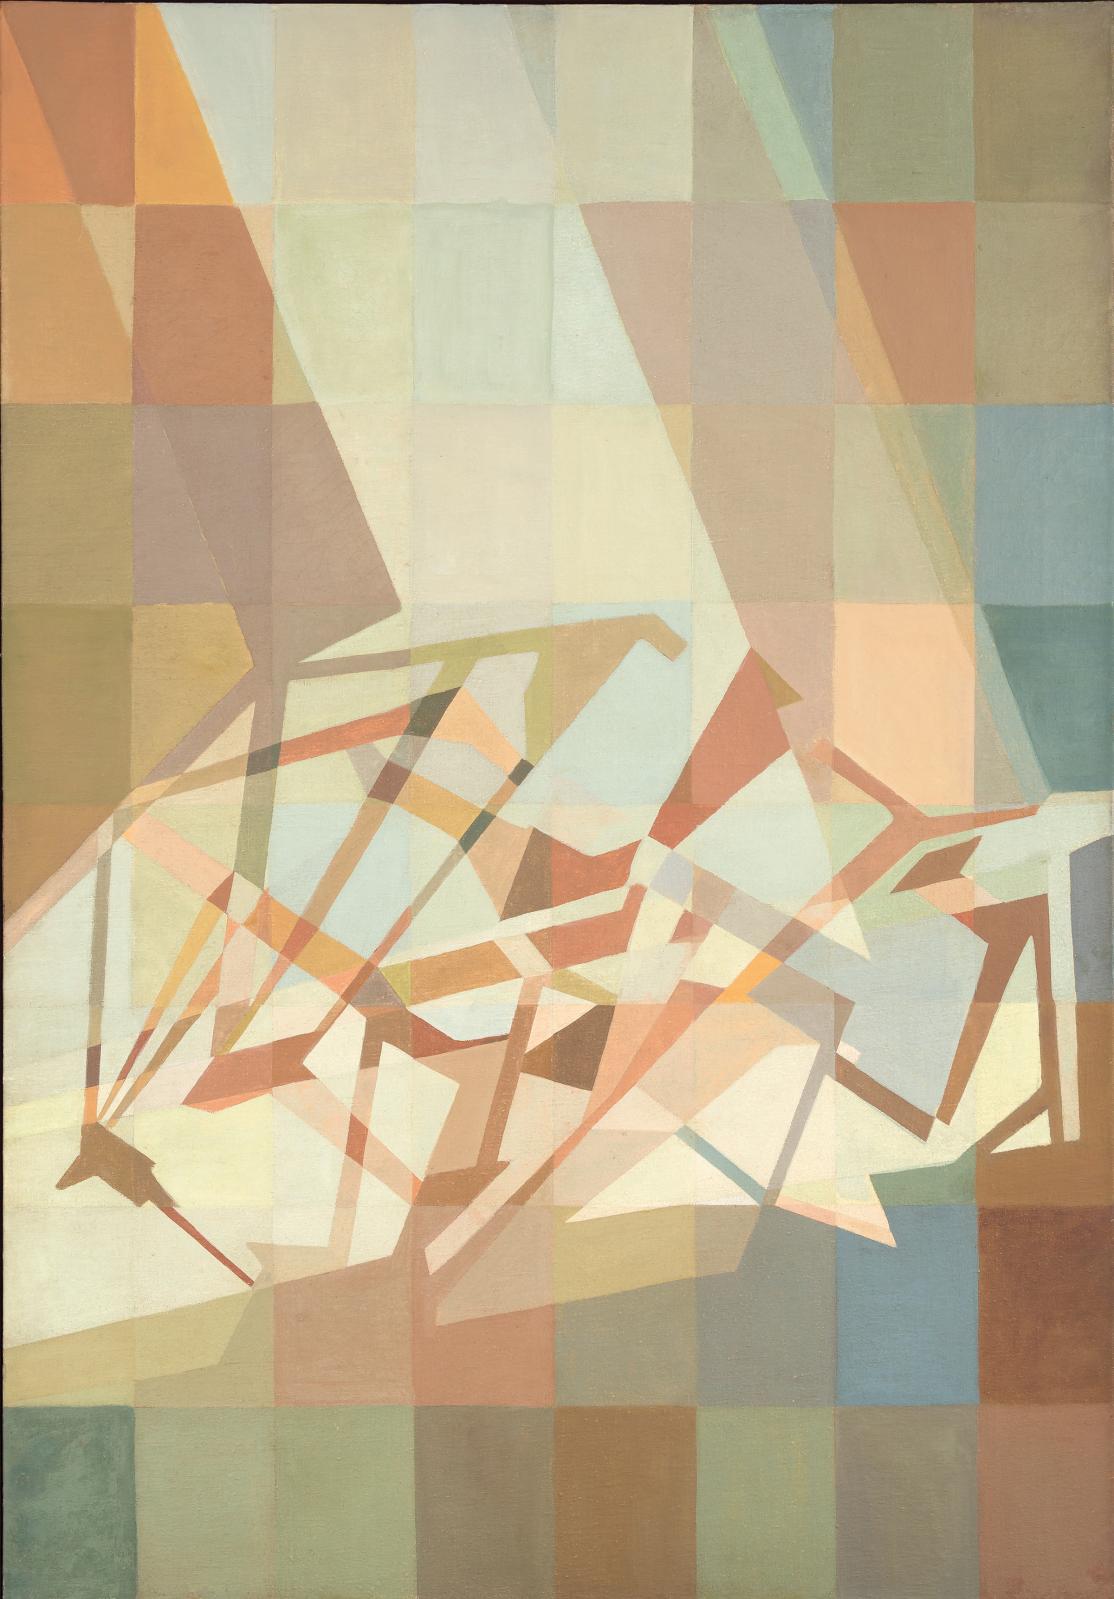 Guggenheim Bilbao : Lygia Clark. La peinture comme champ d’expérimentation, 1948-1958